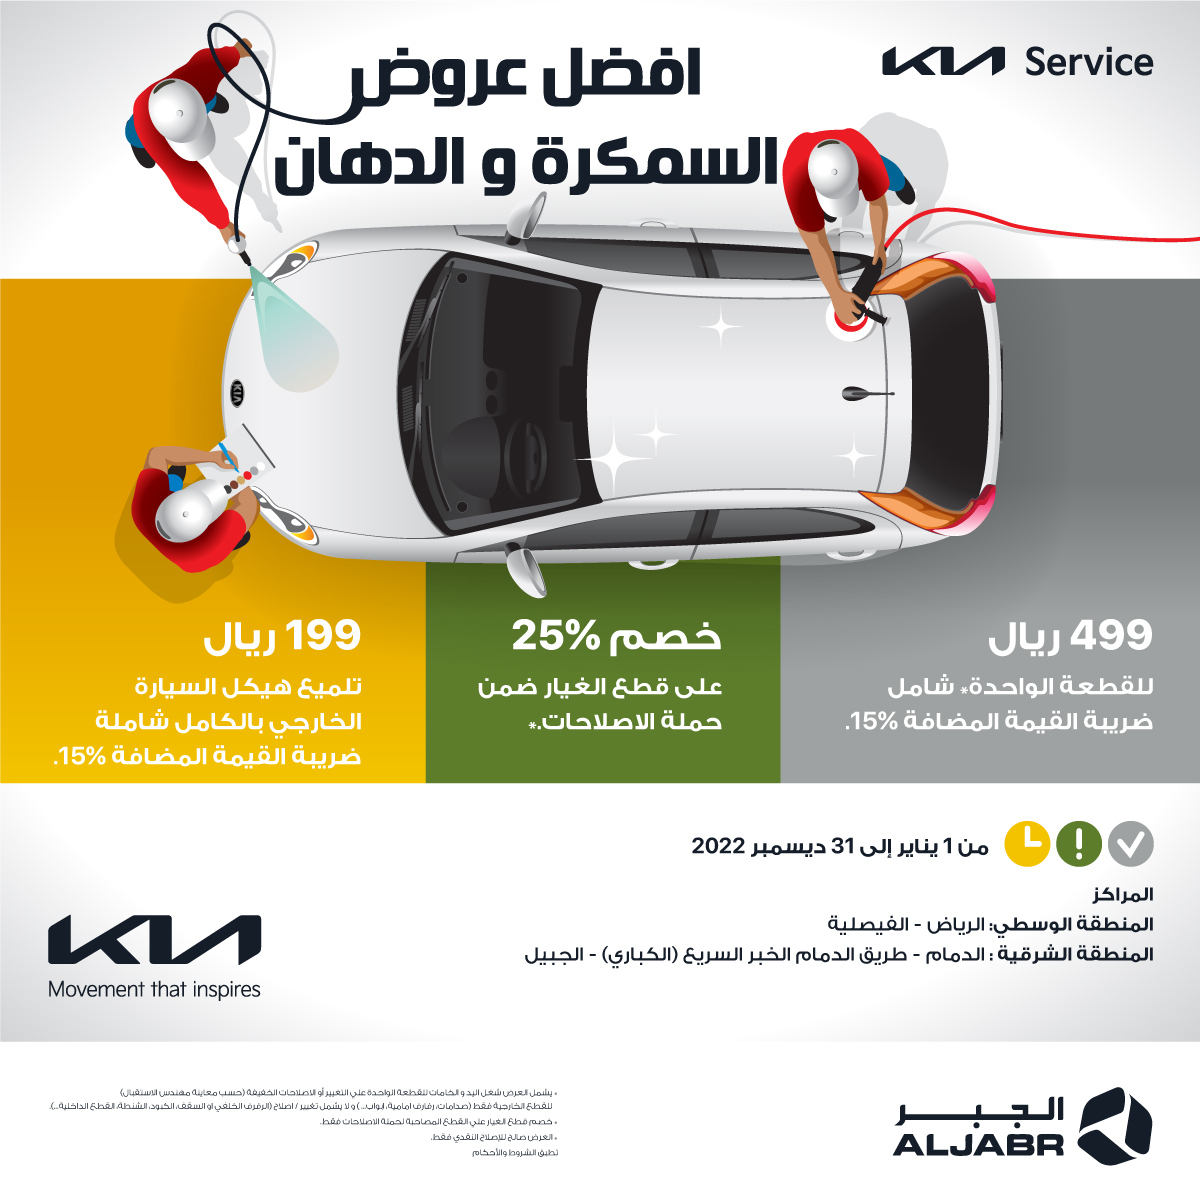 كيا الجبر وكيل كيا تُطلق عرض “السمكرة والدهان” لصيانة السيارات